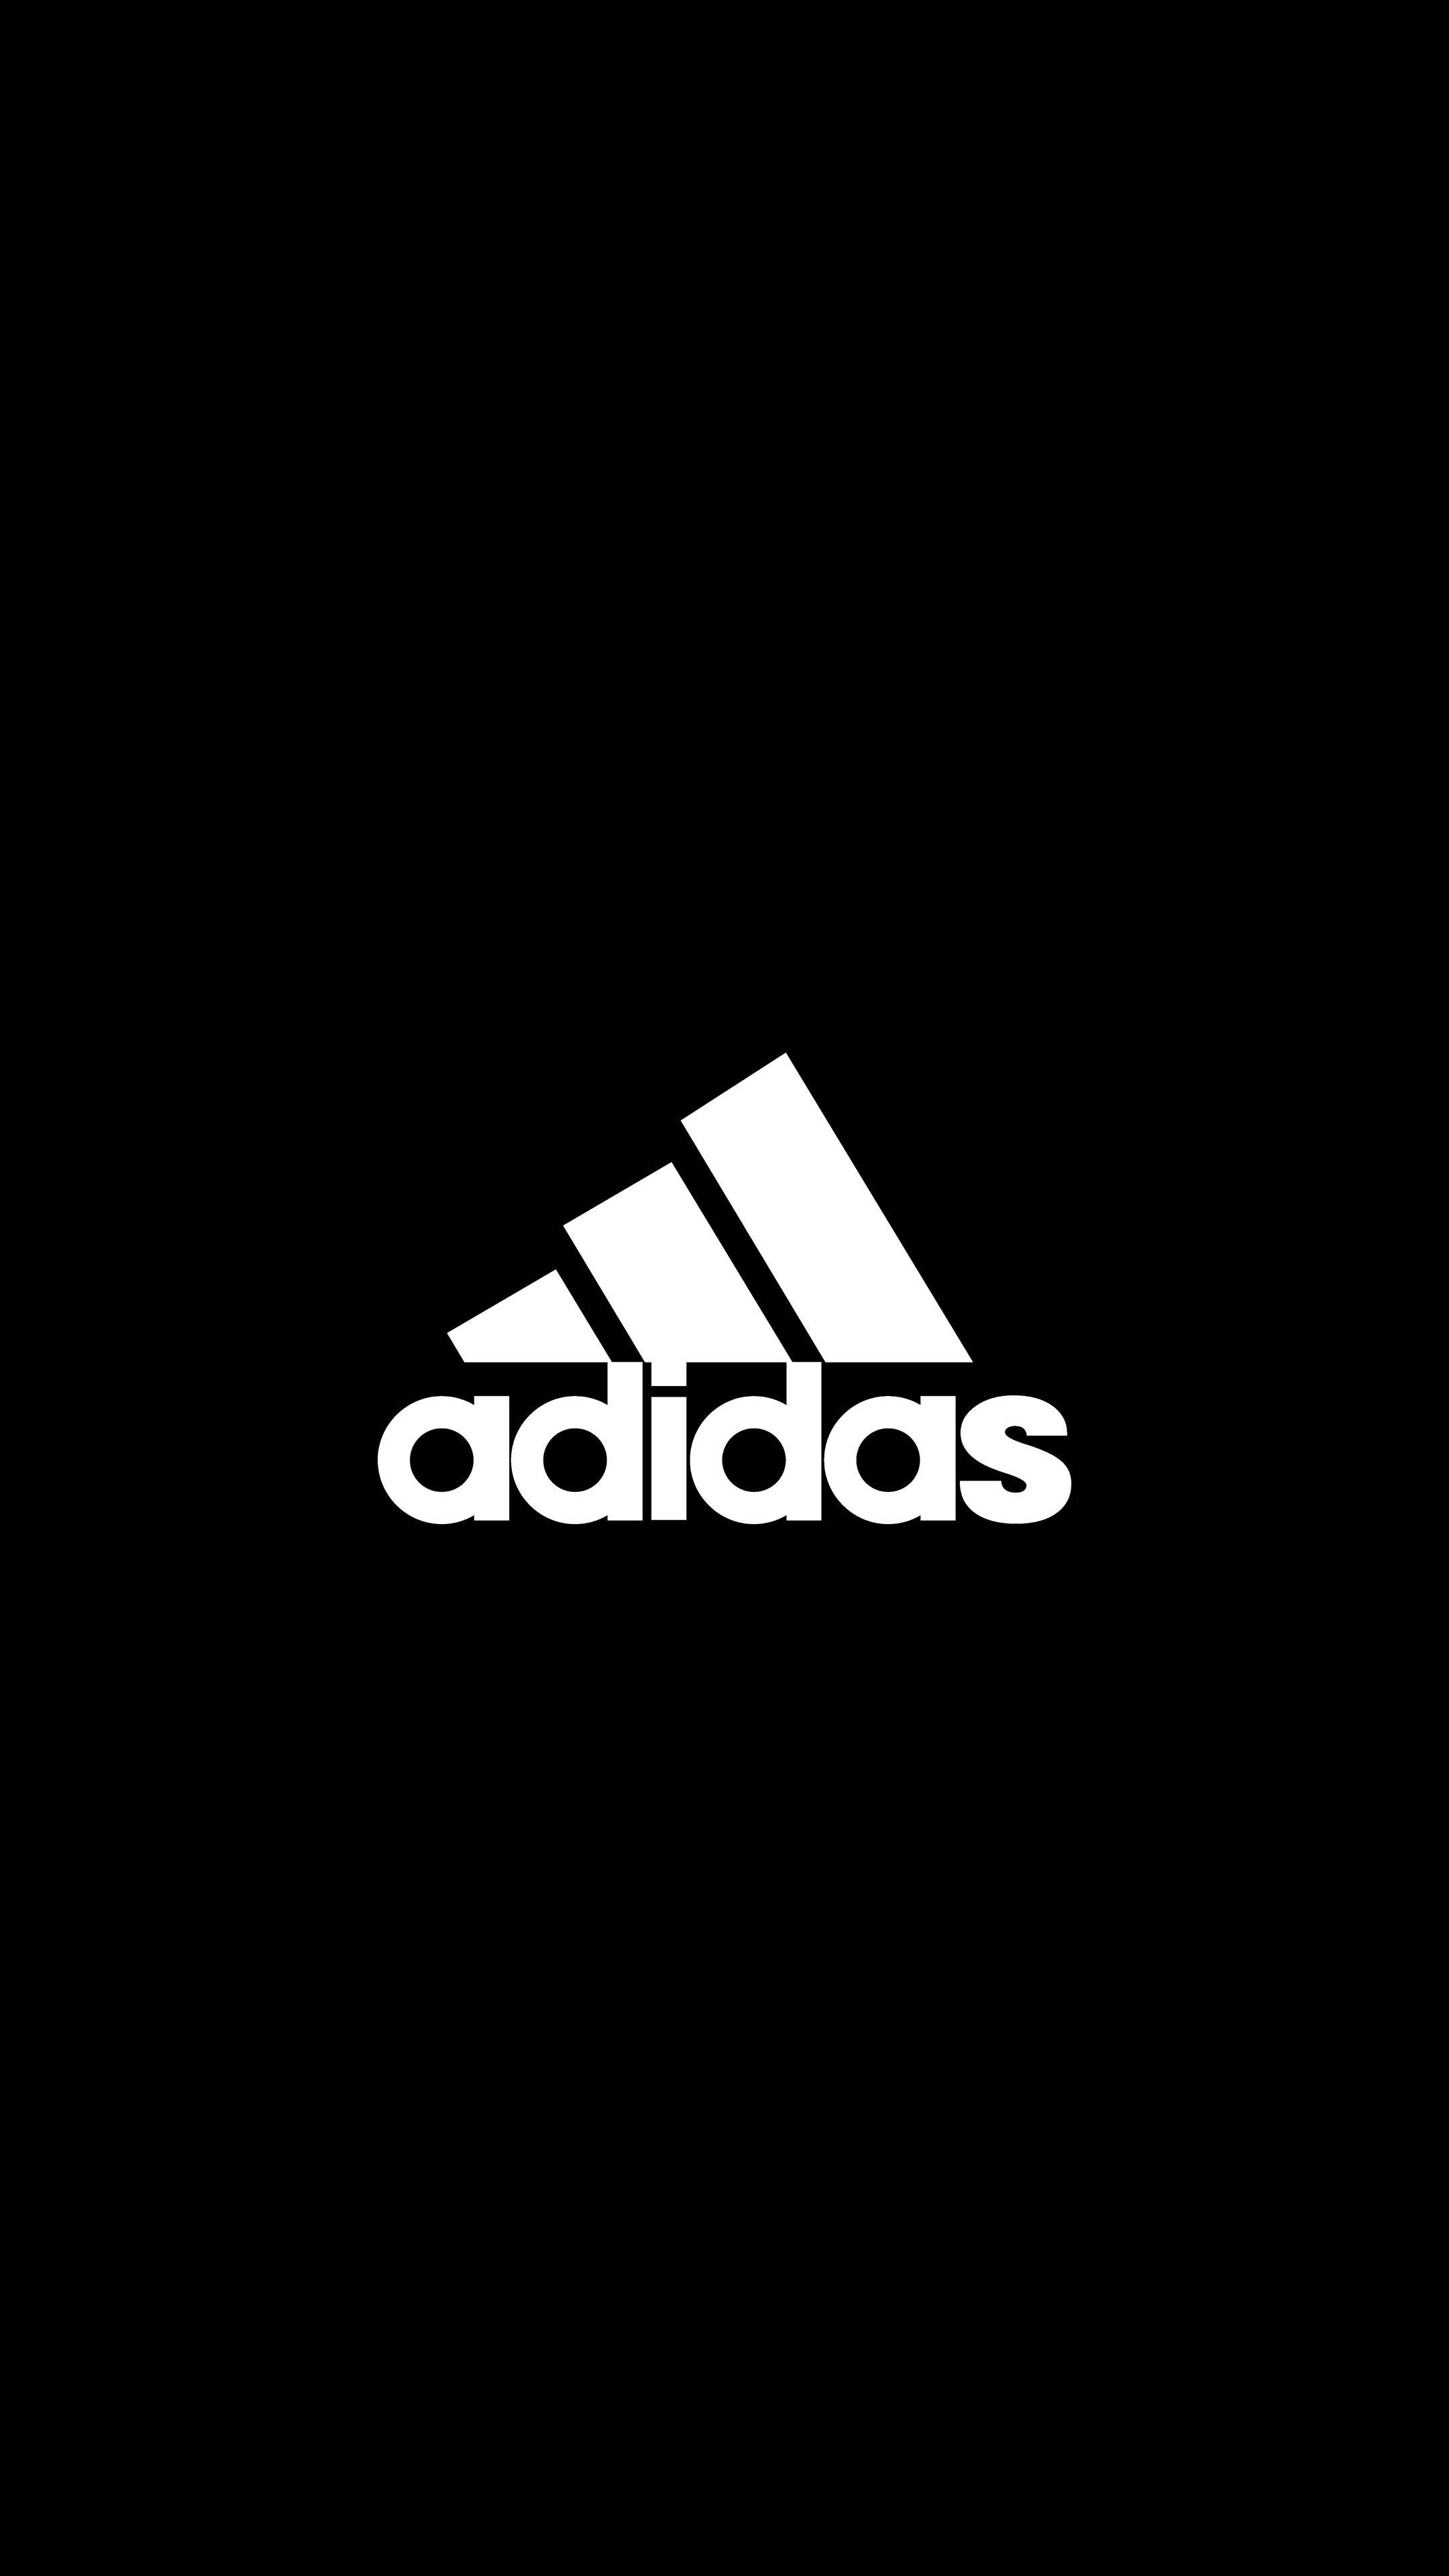 Adidas logo, 2160p/4K resolution, OLED wallpaper, Branded visuals, 2160x3840 4K Handy